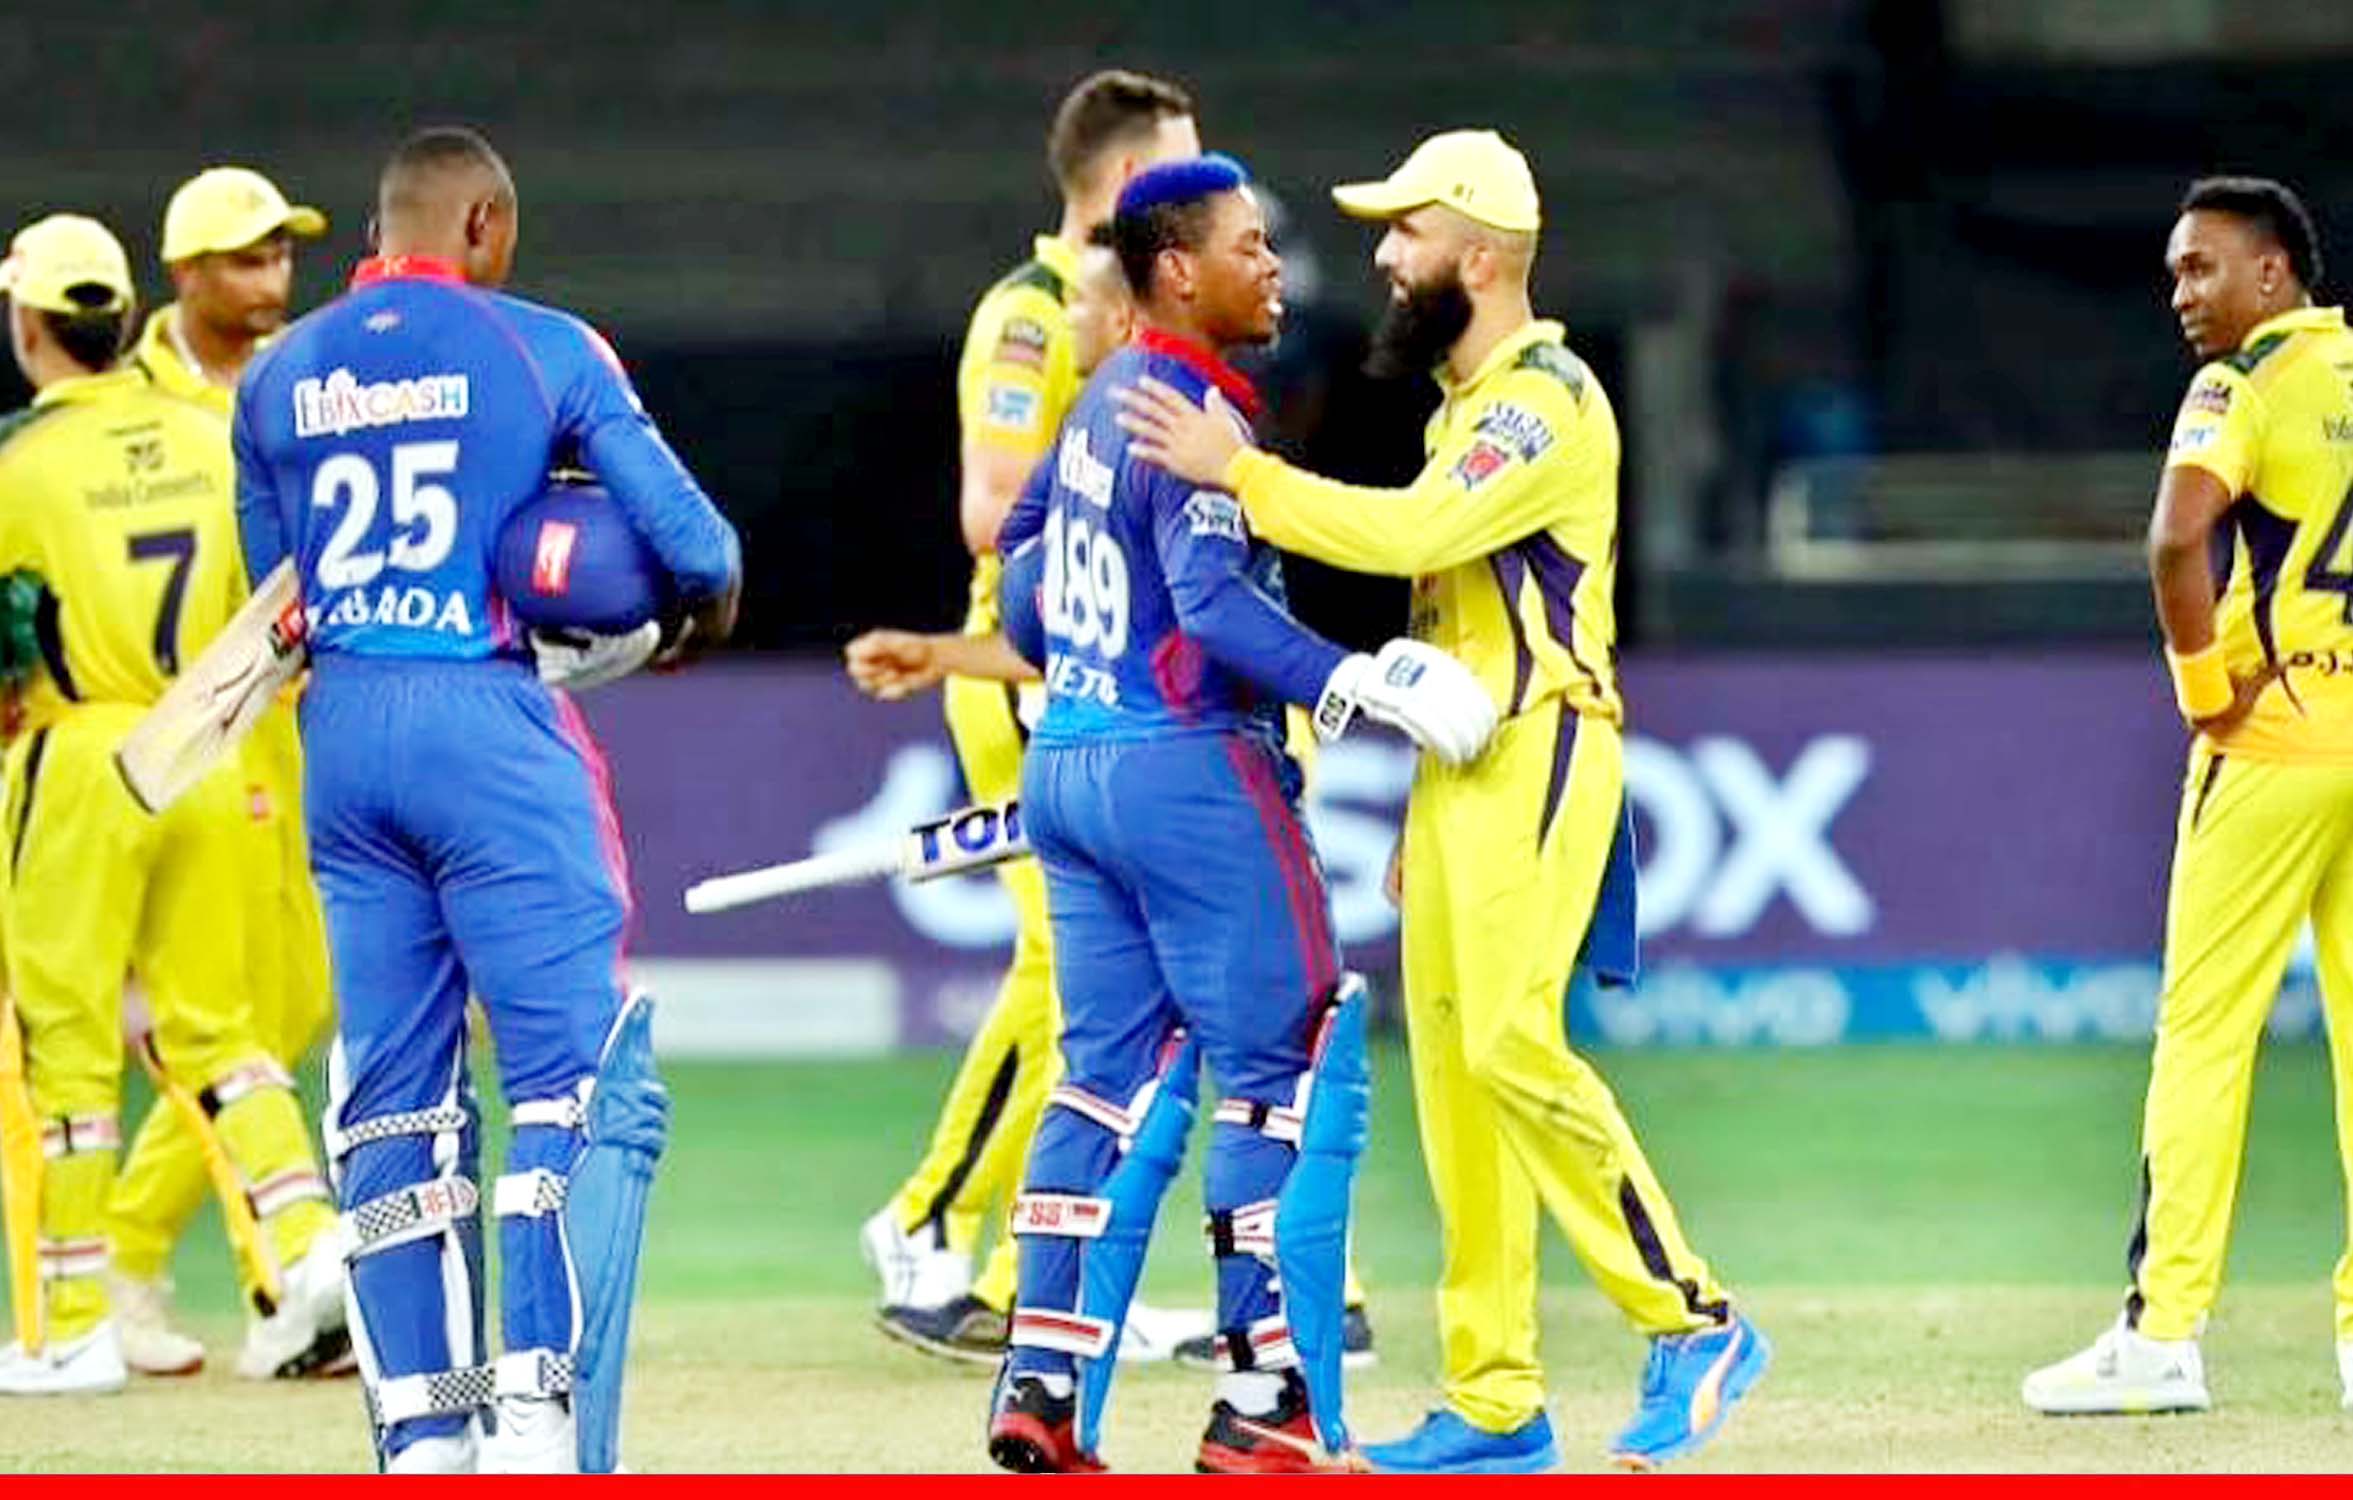 दिल्ली कैपिटल्स ने चेन्नई सुपरकिंग्स को 3 विकेट से हराया, अंक तालिका में टॉप पर बनाई जगह